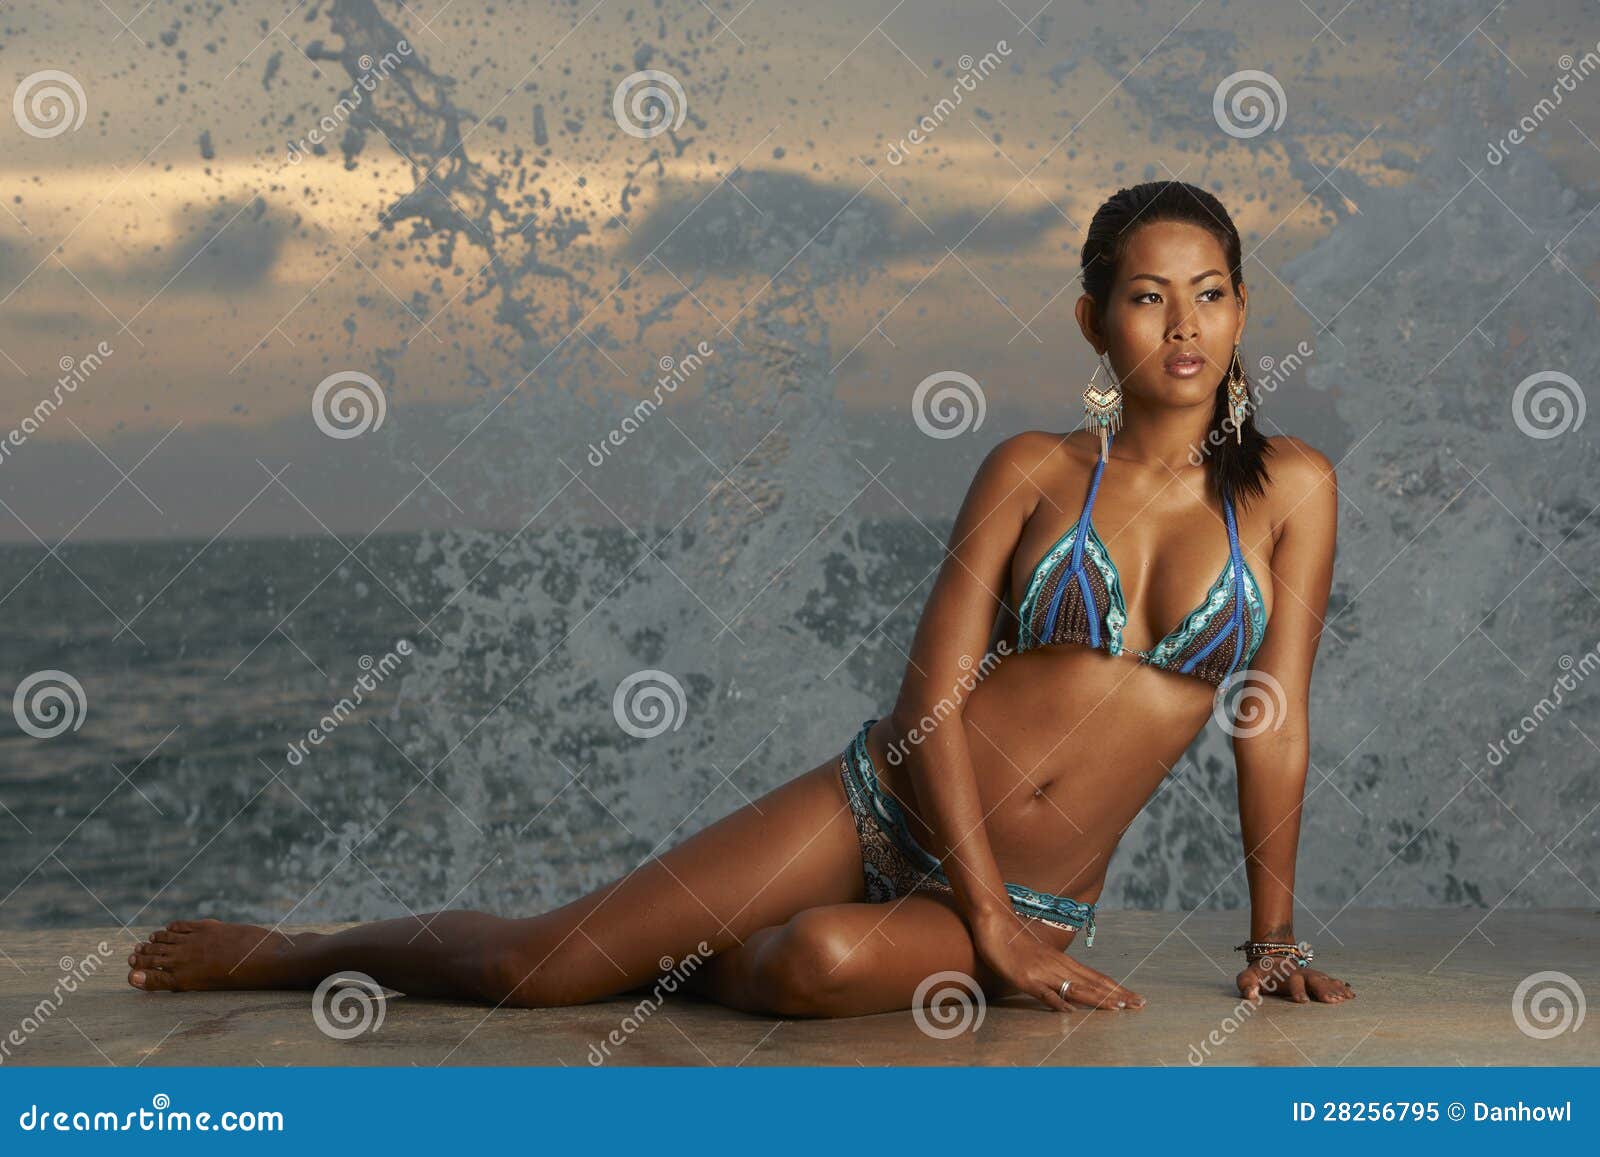 1,720 Thai Bikini Model Stock Photos - Free & Royalty-Free Stock Photos  from Dreamstime